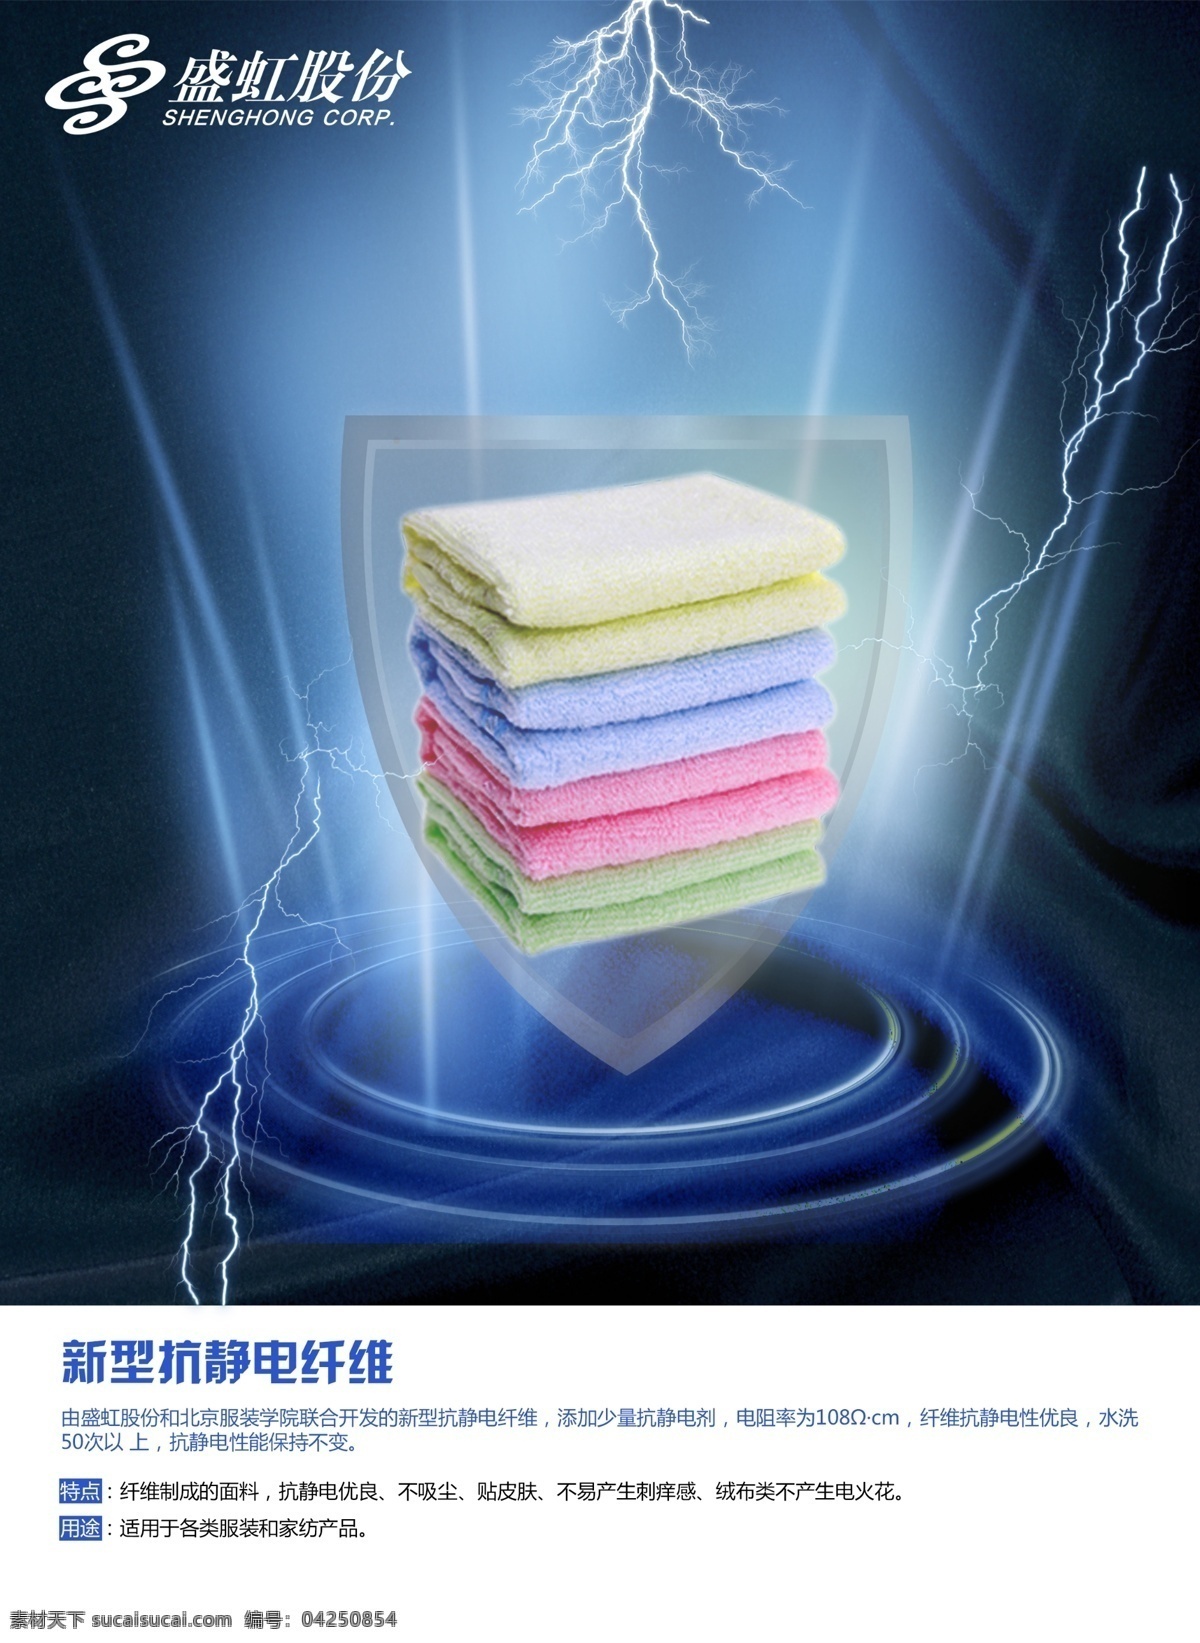 新型 抗静电 纤维 布料 封面 广告 毛巾 毛毯 海报 原创设计 原创海报